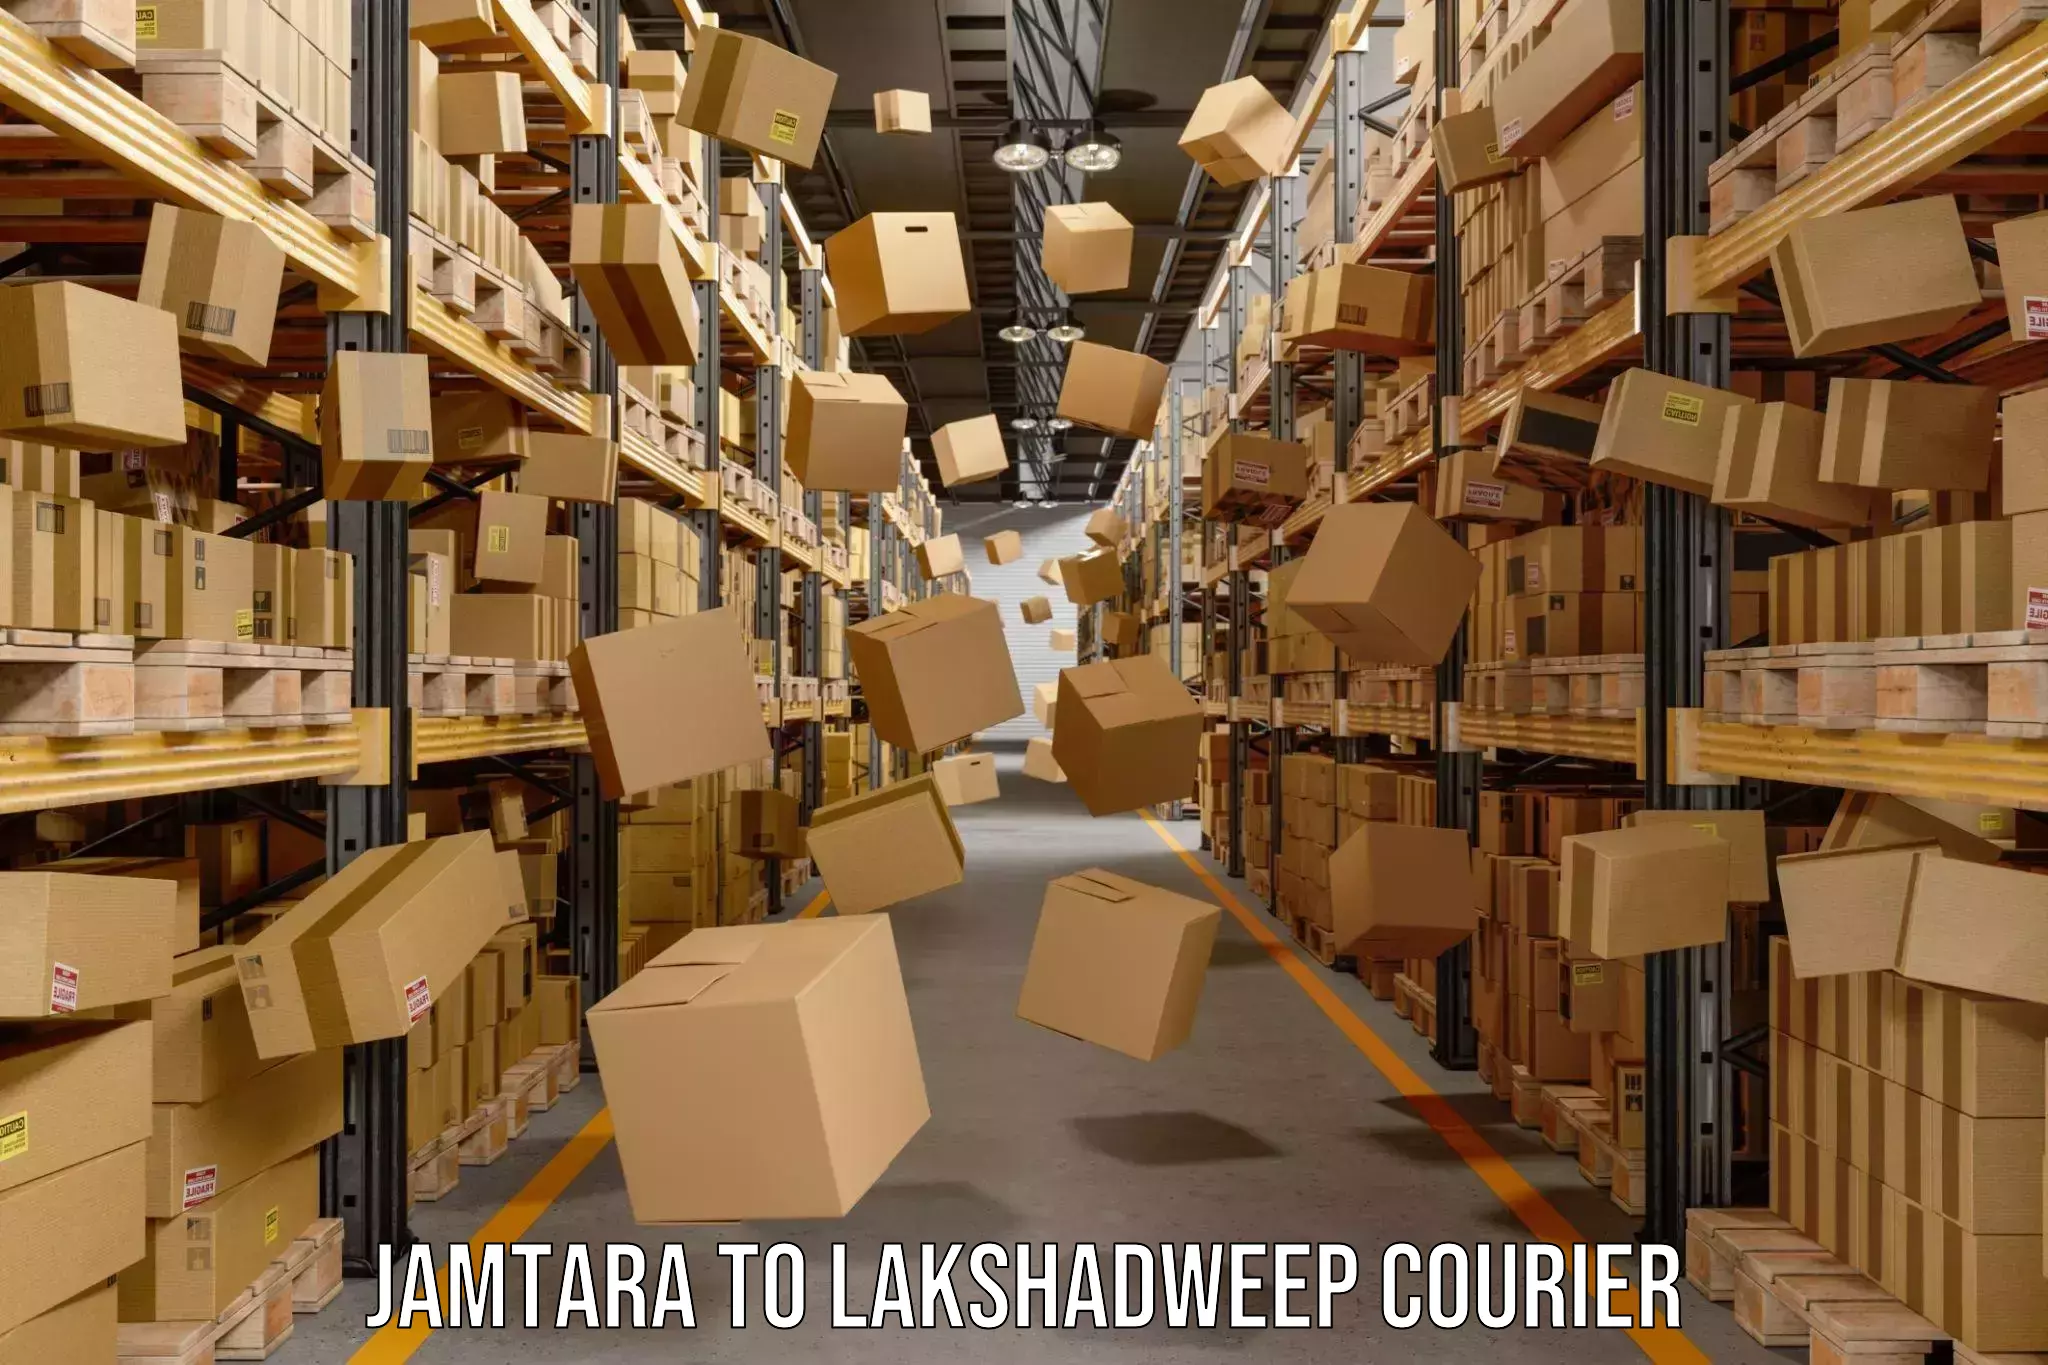 Weekend courier service Jamtara to Lakshadweep